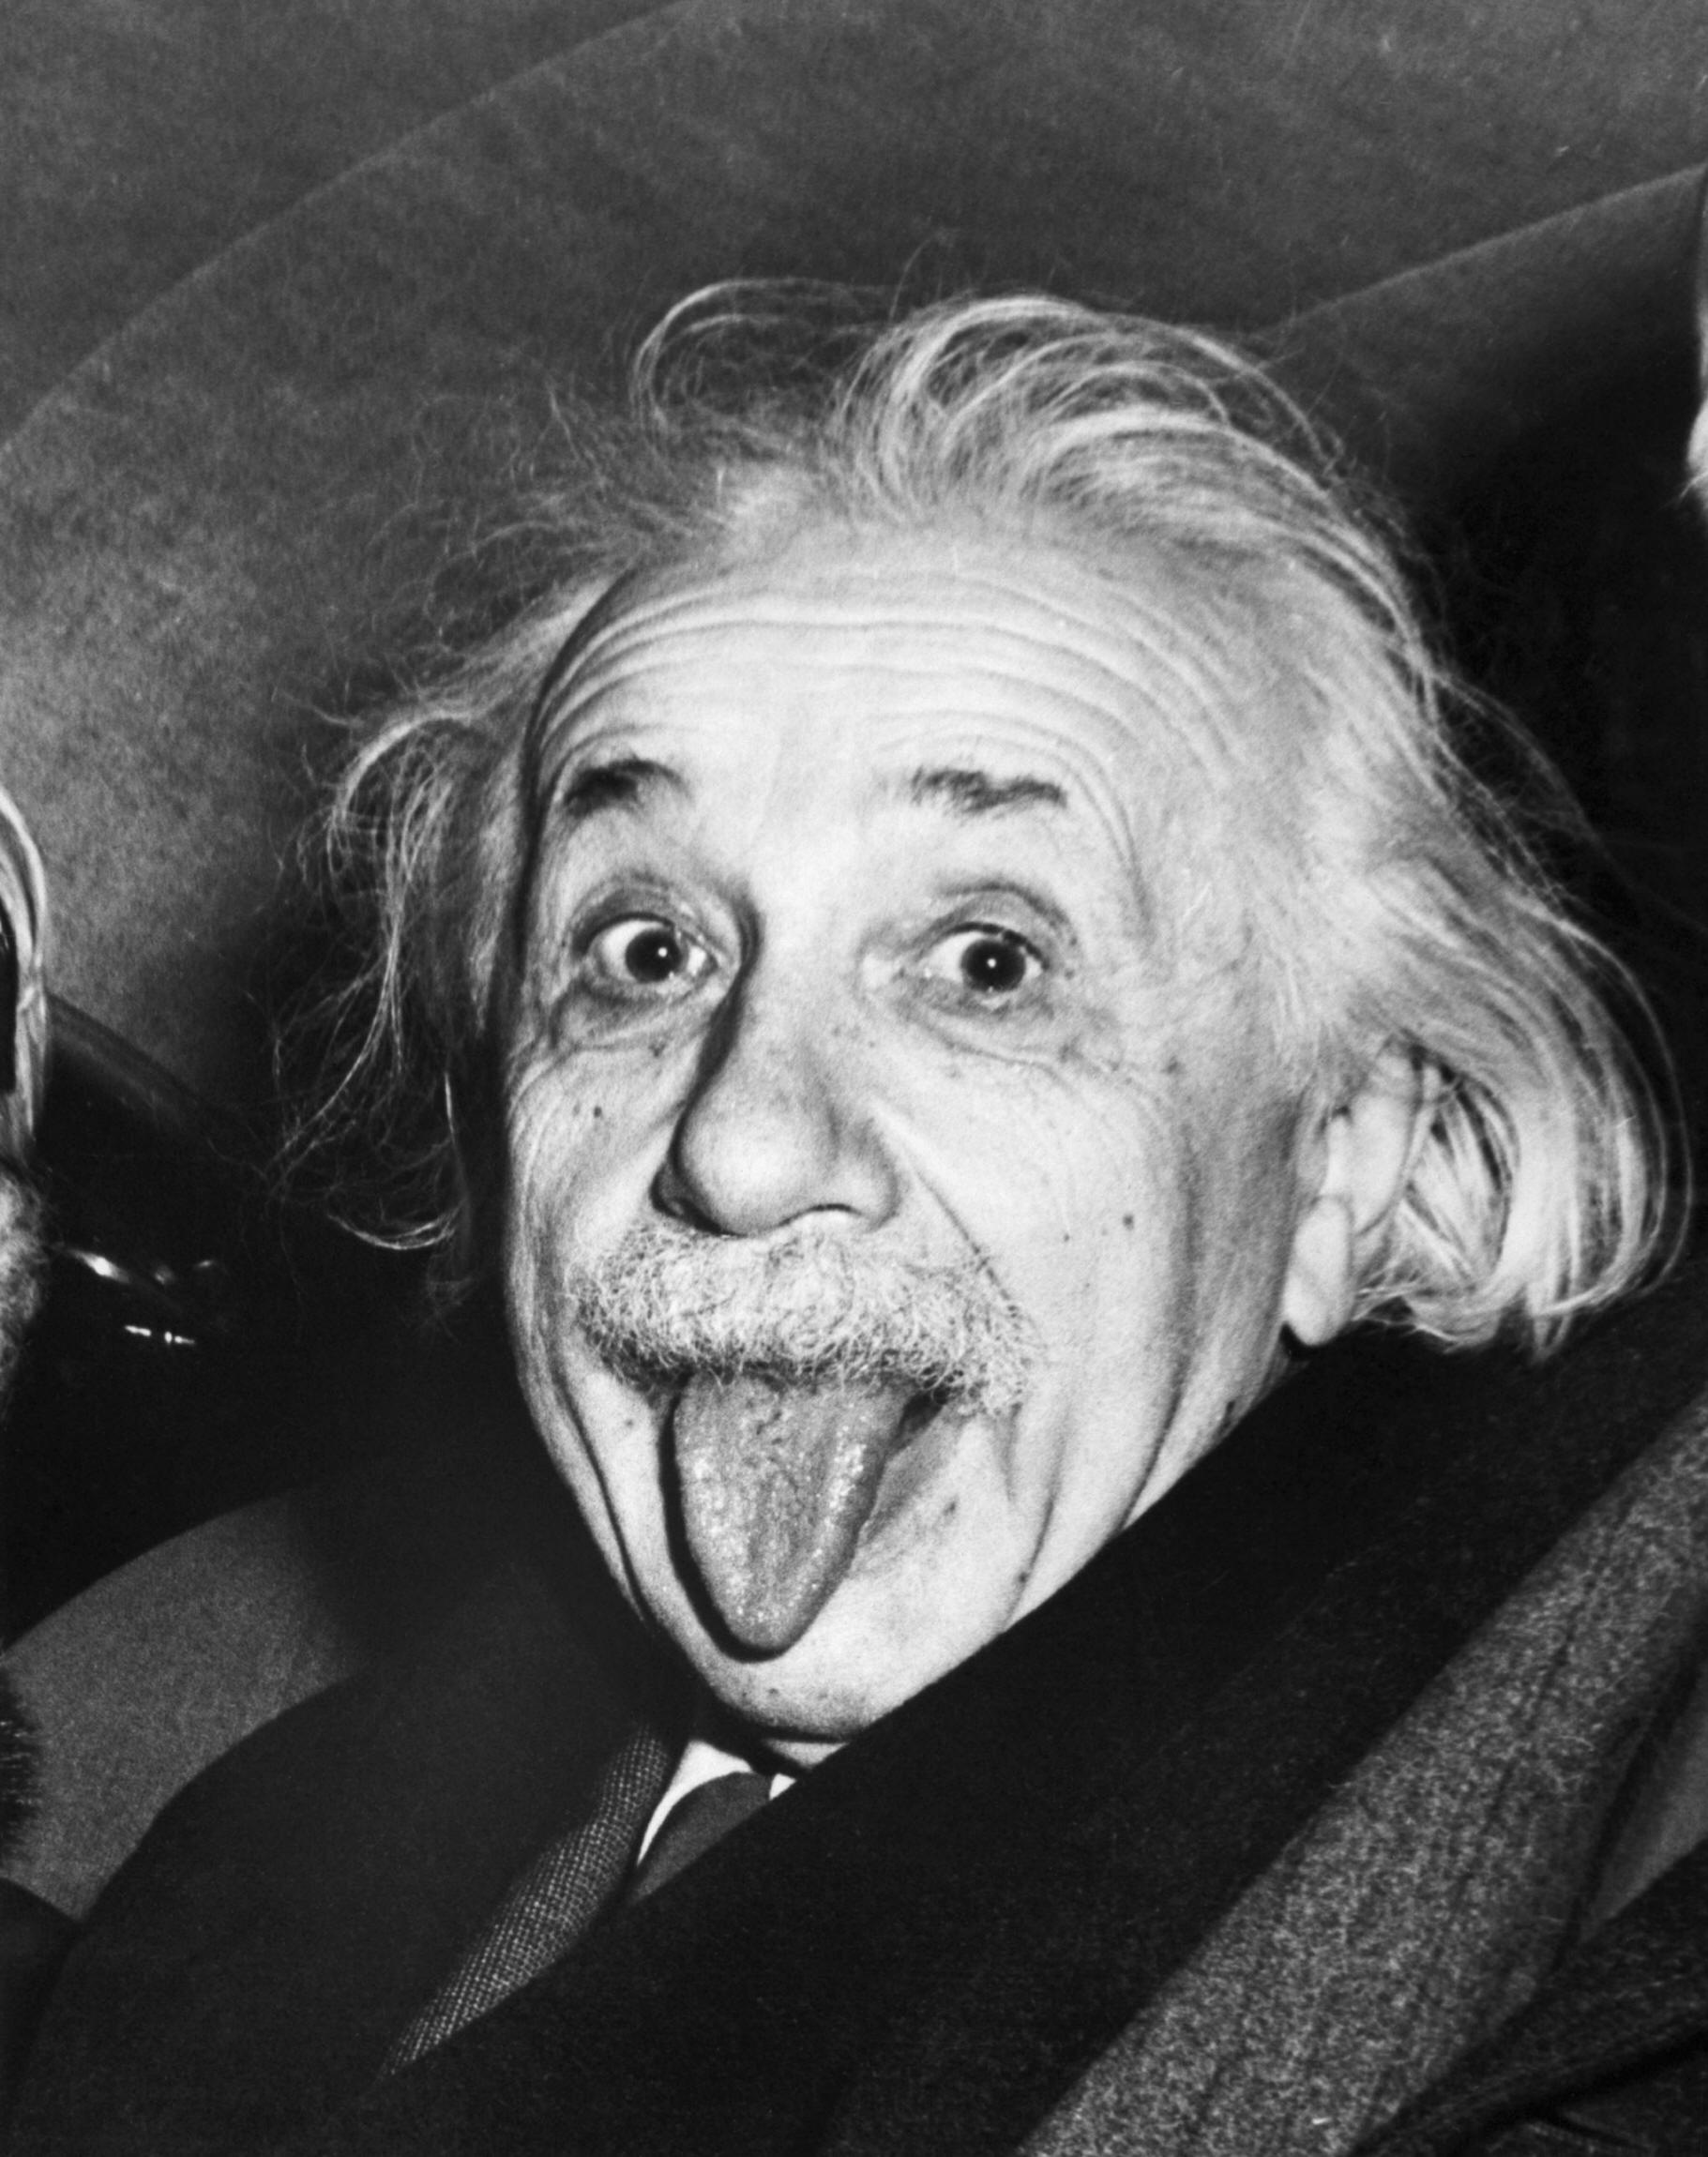 Albert Einstein: Biography, Physicist, Nobel Prize Winner